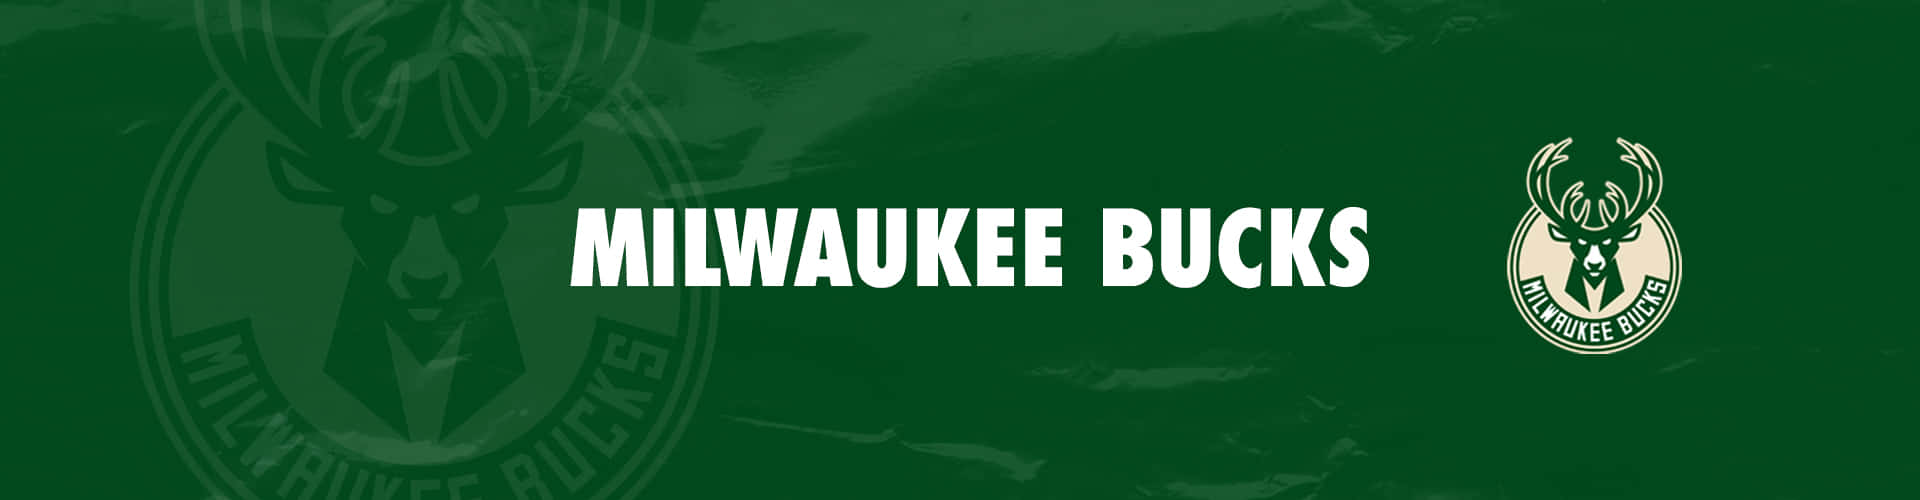 Denikoniska Logotypen För Milwaukee Bucks Basketlaget. Wallpaper